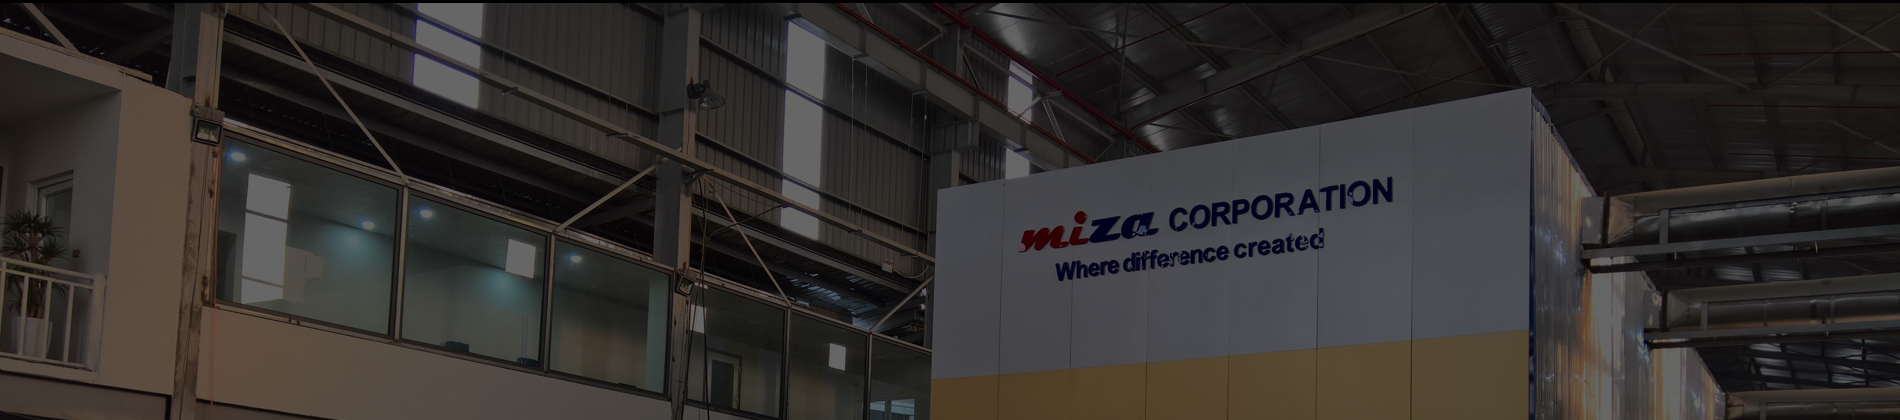 Miza: Ứng dụng hệ thống điện mặt trời vào công nghệ tái chế giấy